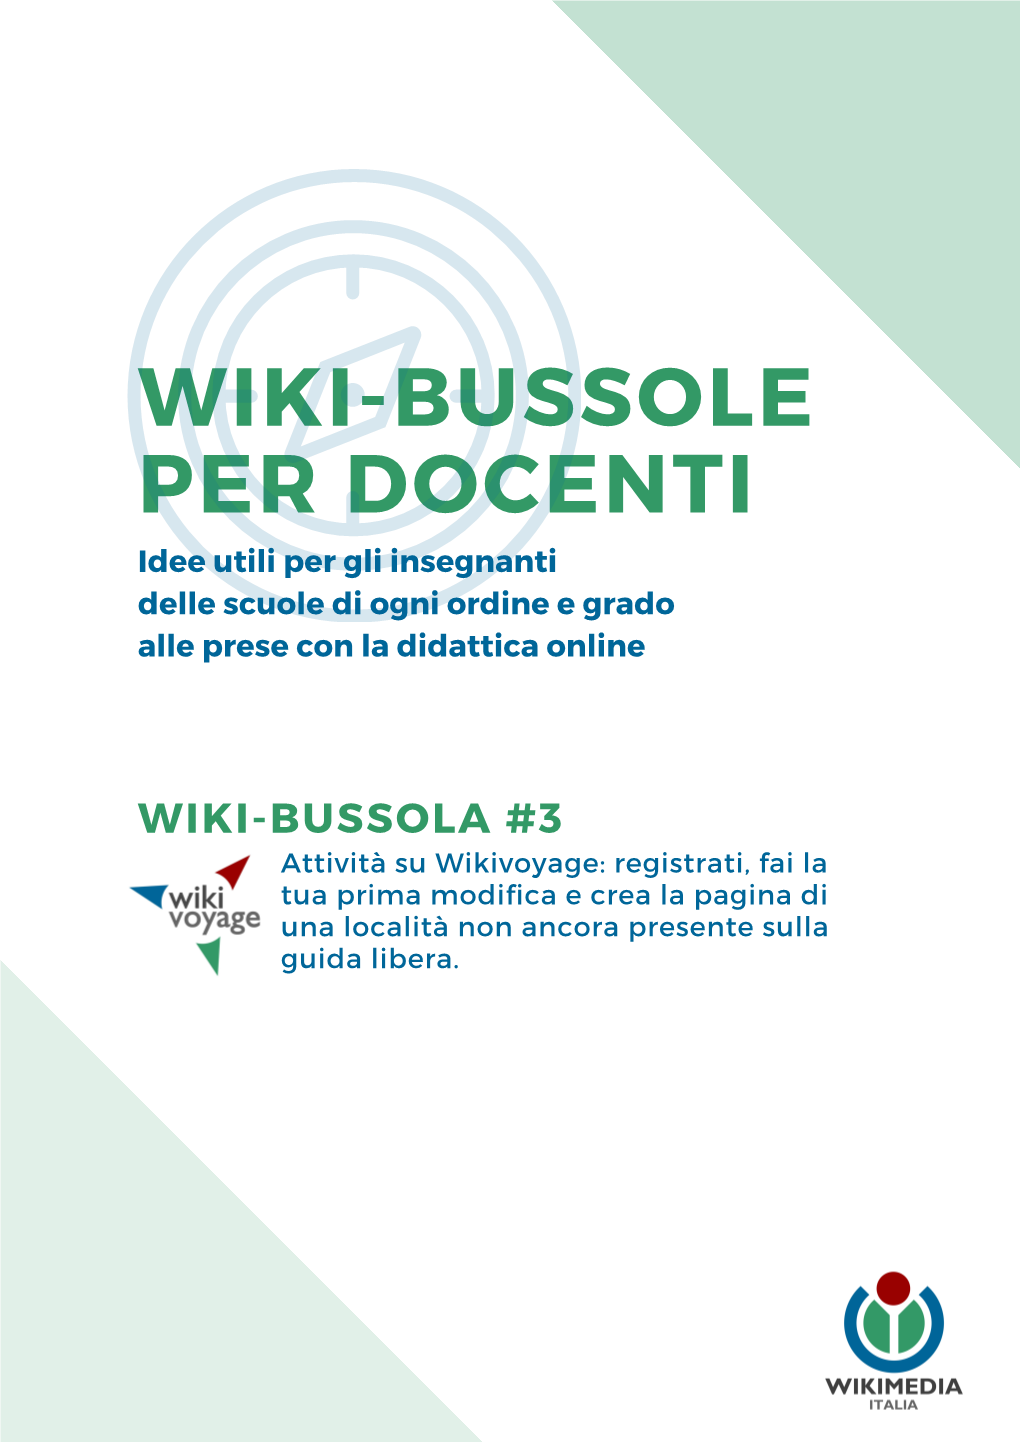 WIKI-BUSSOLA #3 Attività Su Wikivoyage: Registrati, Fai La Tua Prima Modifica E Crea La Pagina Di Una Località Non Ancora Presente Sulla Guida Libera